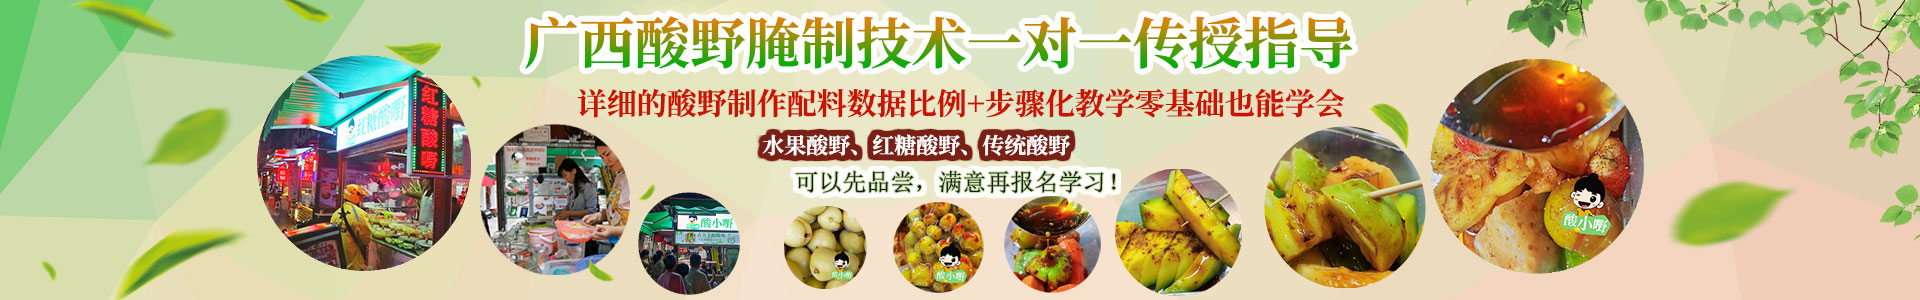 三江酸嘢-酸品-酸料-酸野水果做法与配料学费多少钱